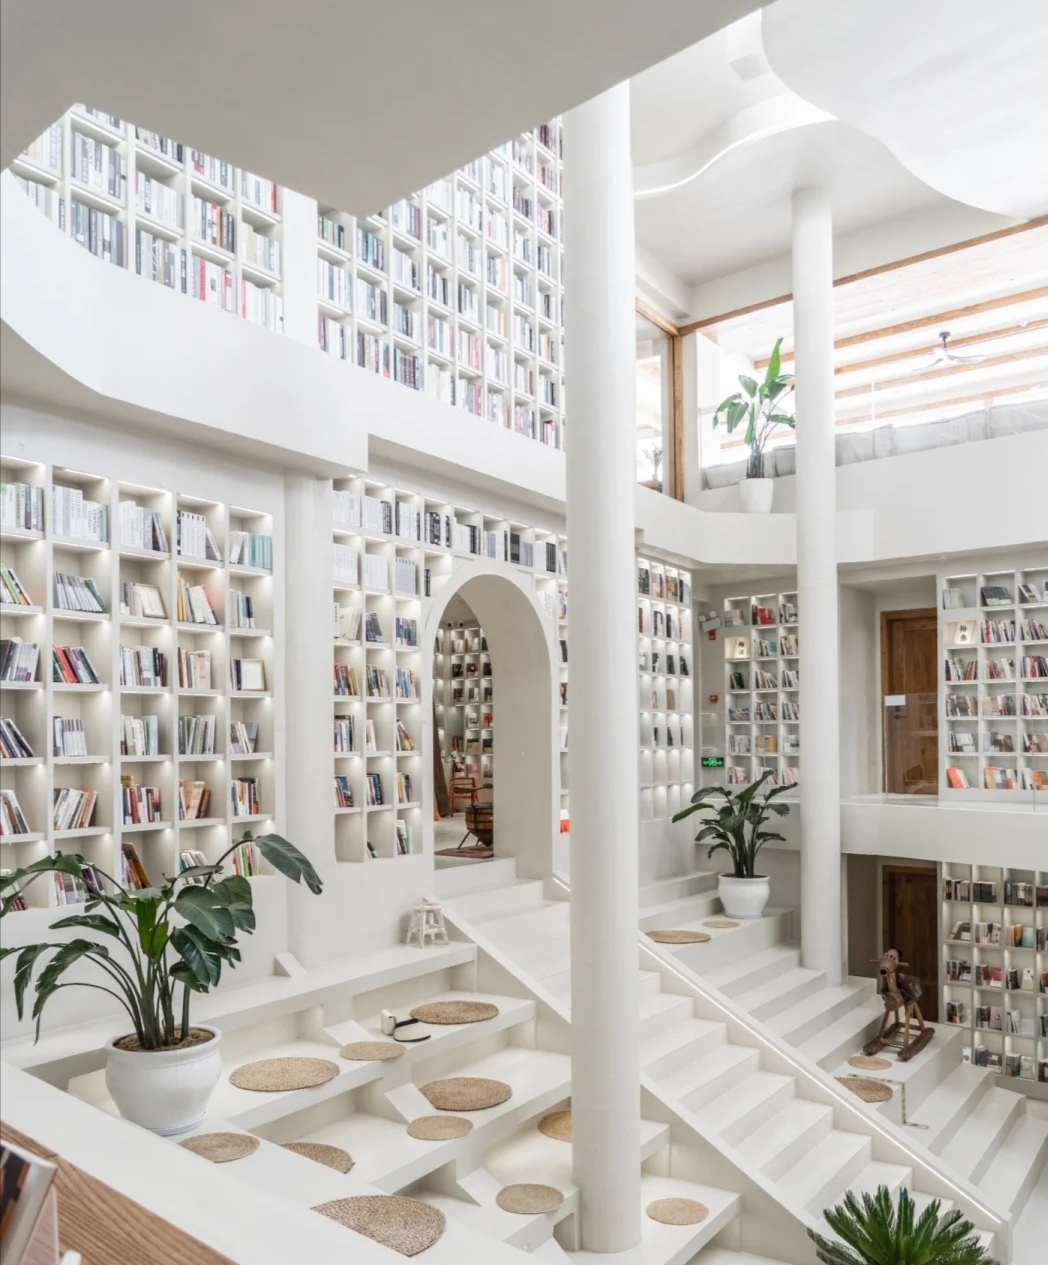 云南最美书店藏在和顺古镇的纯白艺术空间